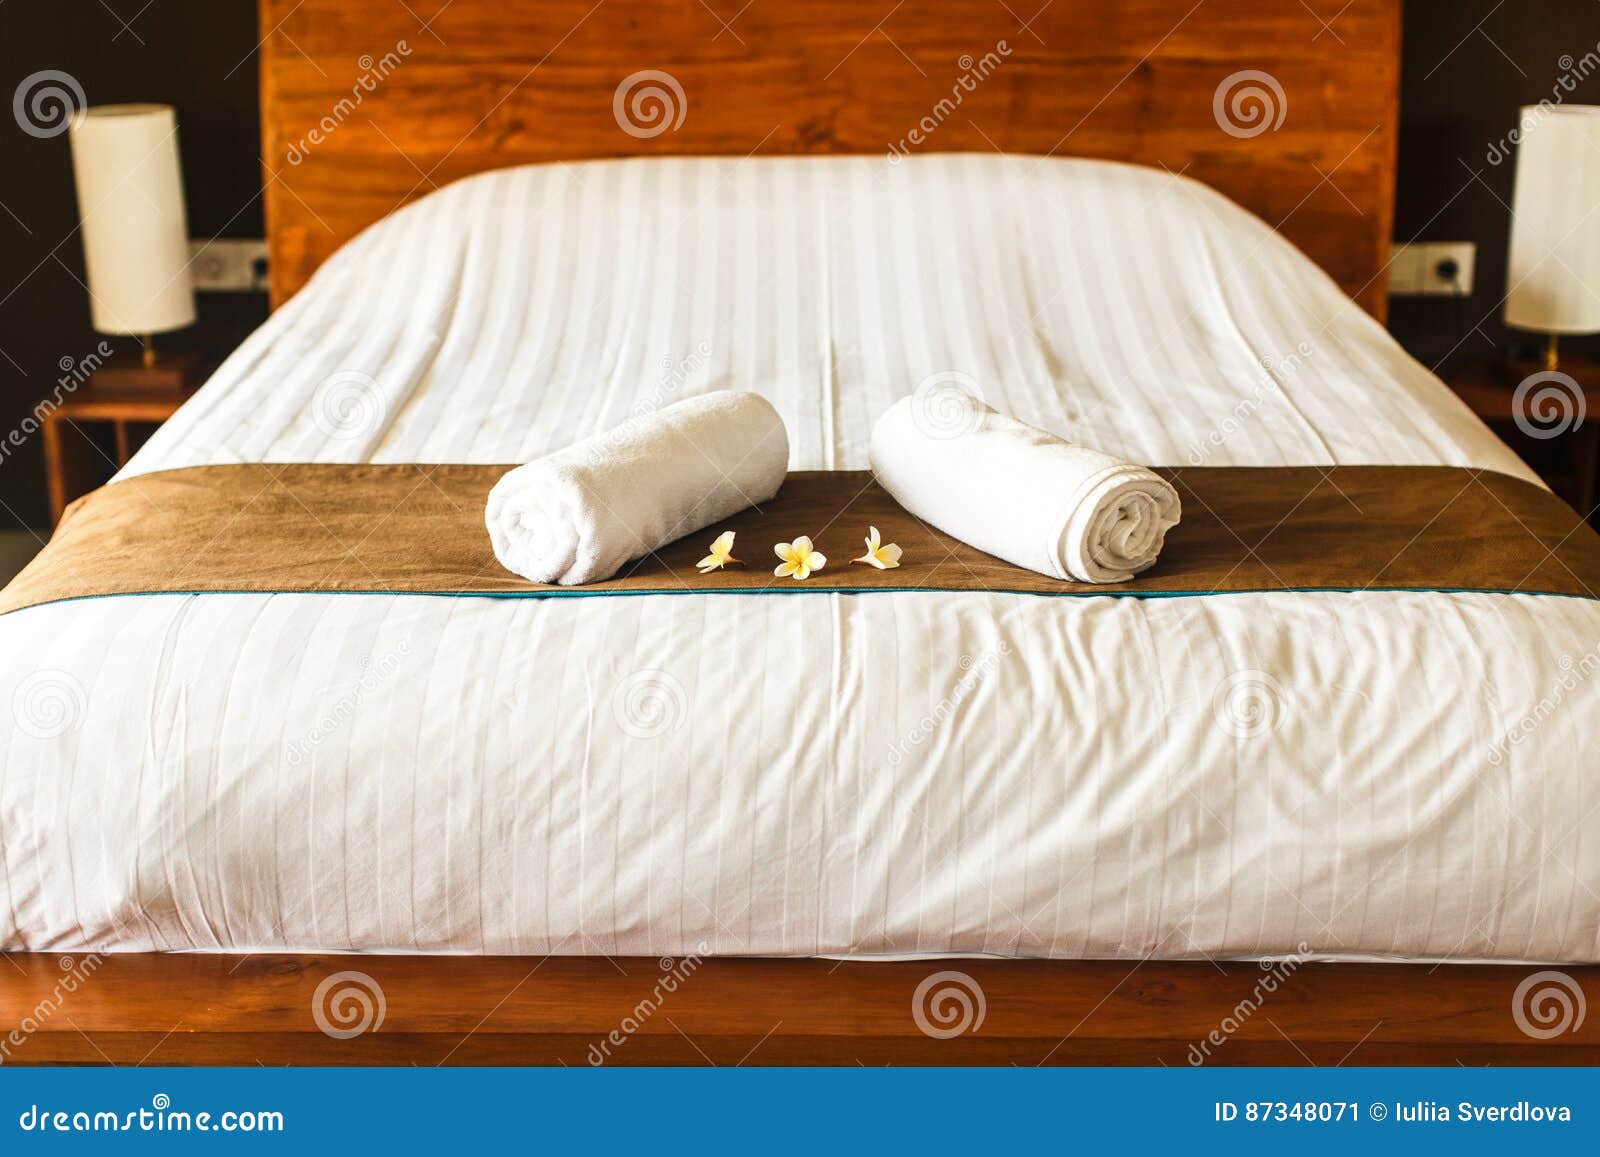 Полотенце на кровати. Полотенца на кровати. Полотенце отель кровать. Полотенца на кровати в гостинице. Расправленное полотенце на кровати.